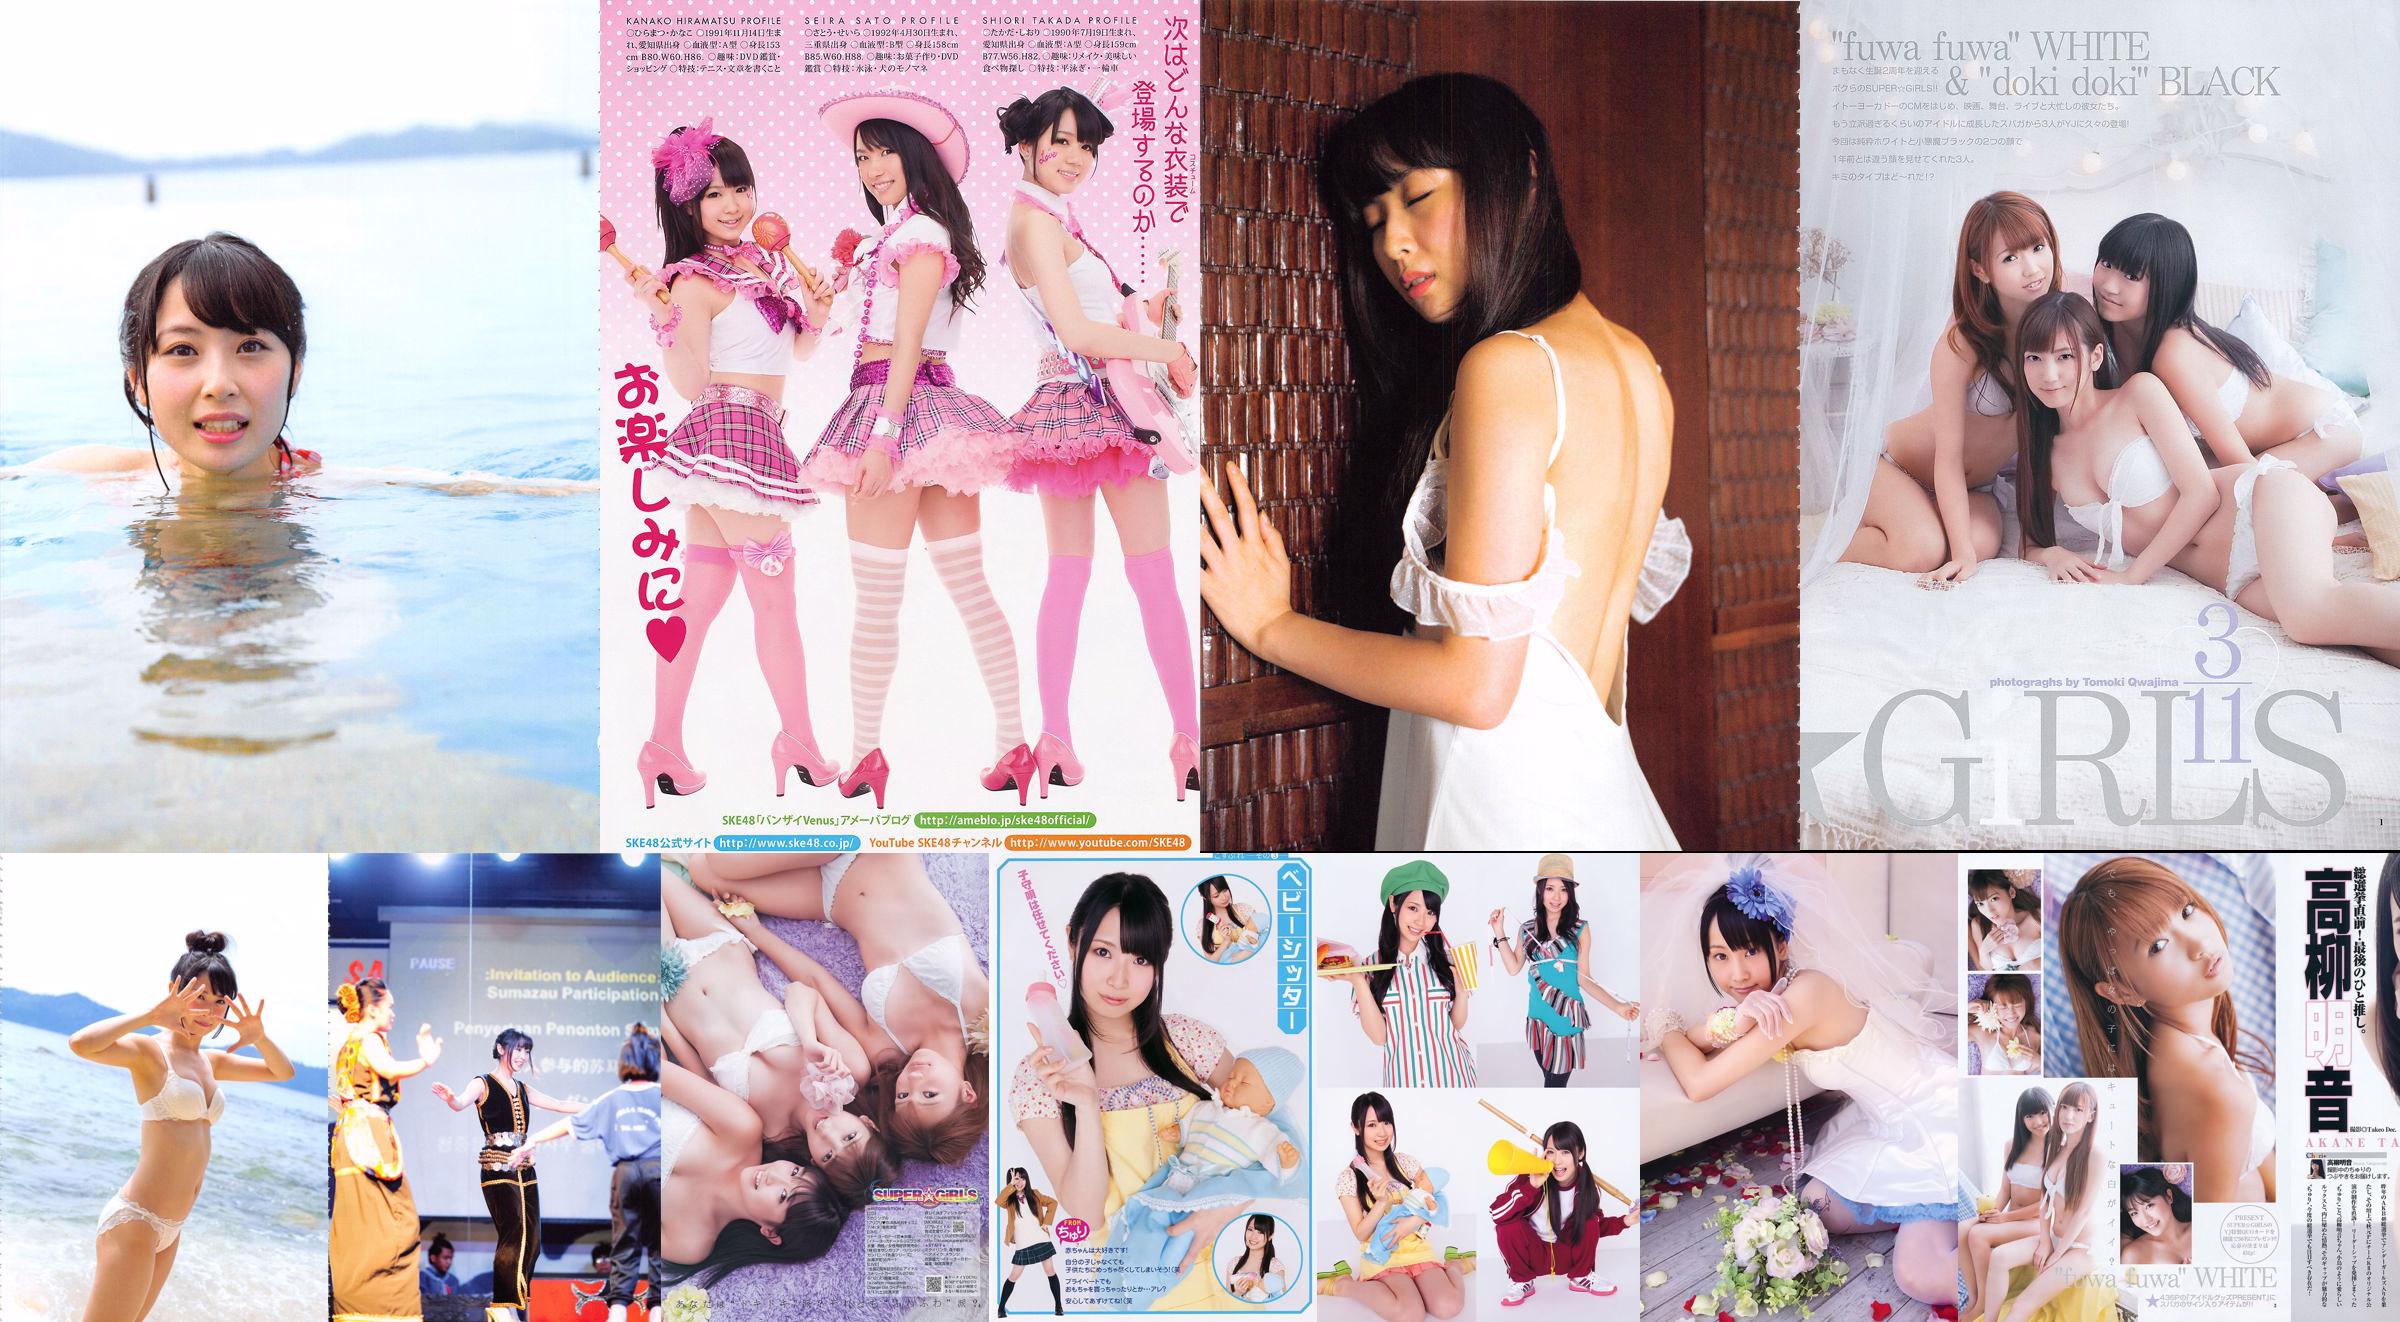 Akane Takayanagi SKE48 Fujii Sherry Asakura Sorrow Shinsaki Shiori [Young Animal] Tạp chí ảnh số 11 năm 2011 No.453c6e Trang 2